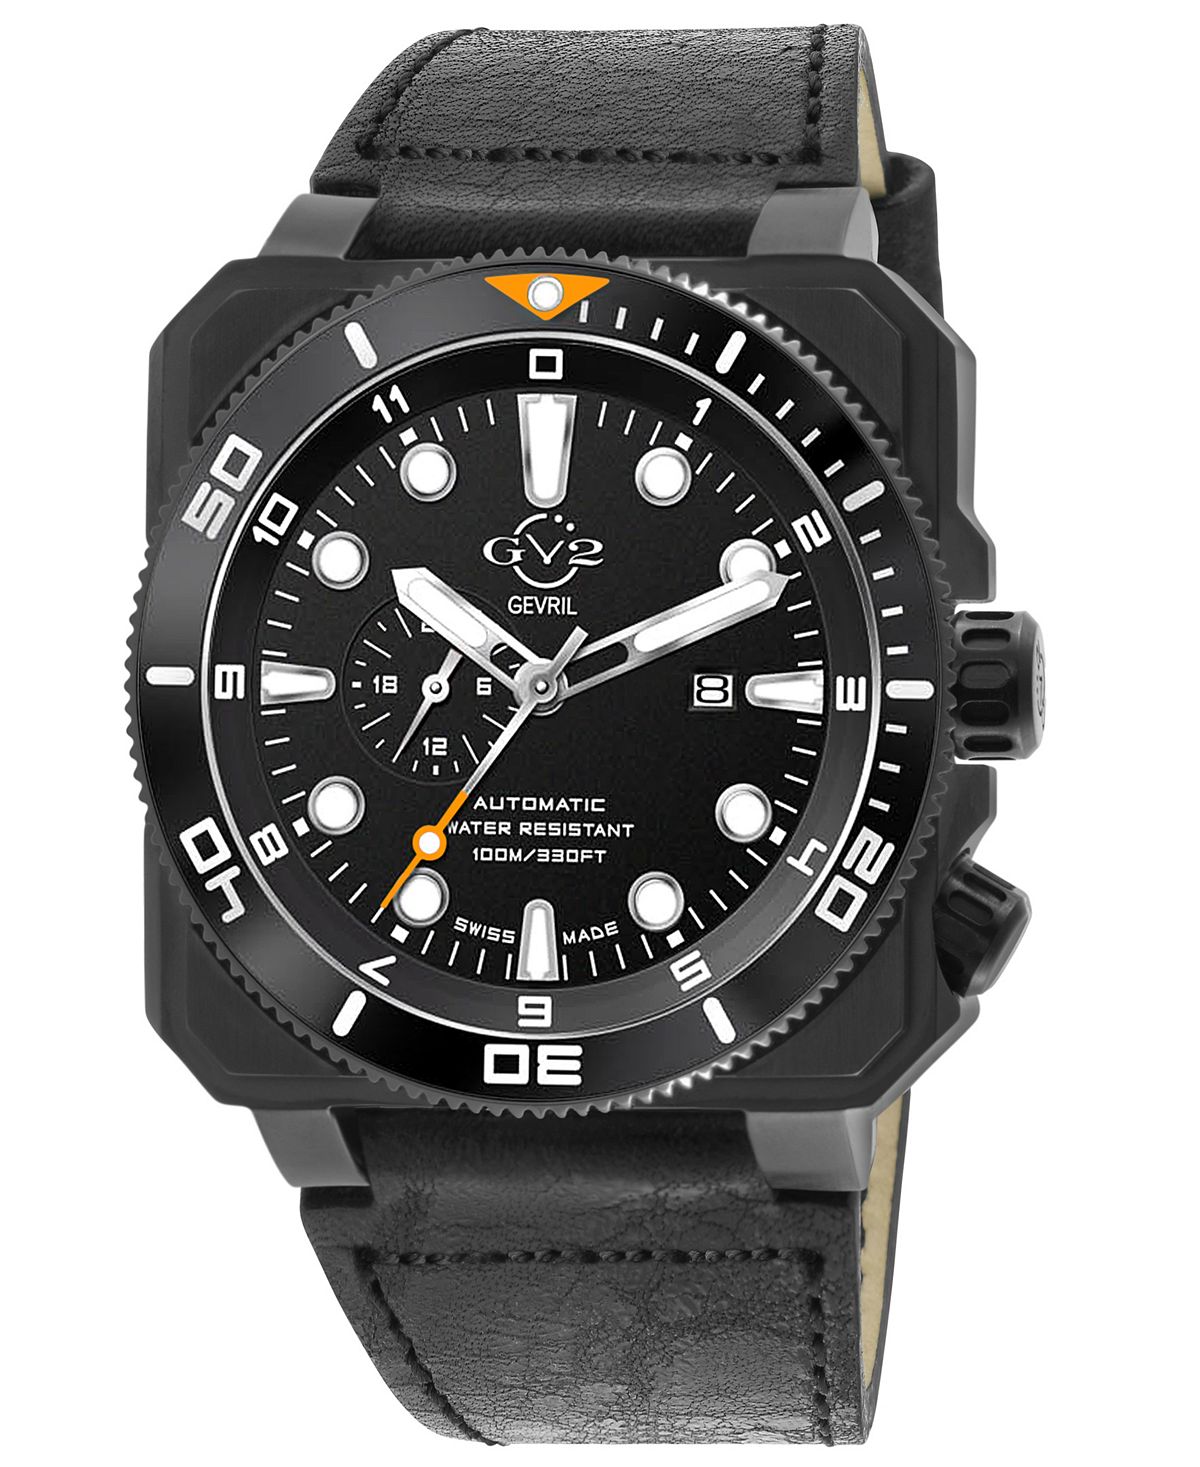 Мужские часы XO Submarine швейцарские автоматические черные кожаные часы 44 мм GV2 by Gevril фото